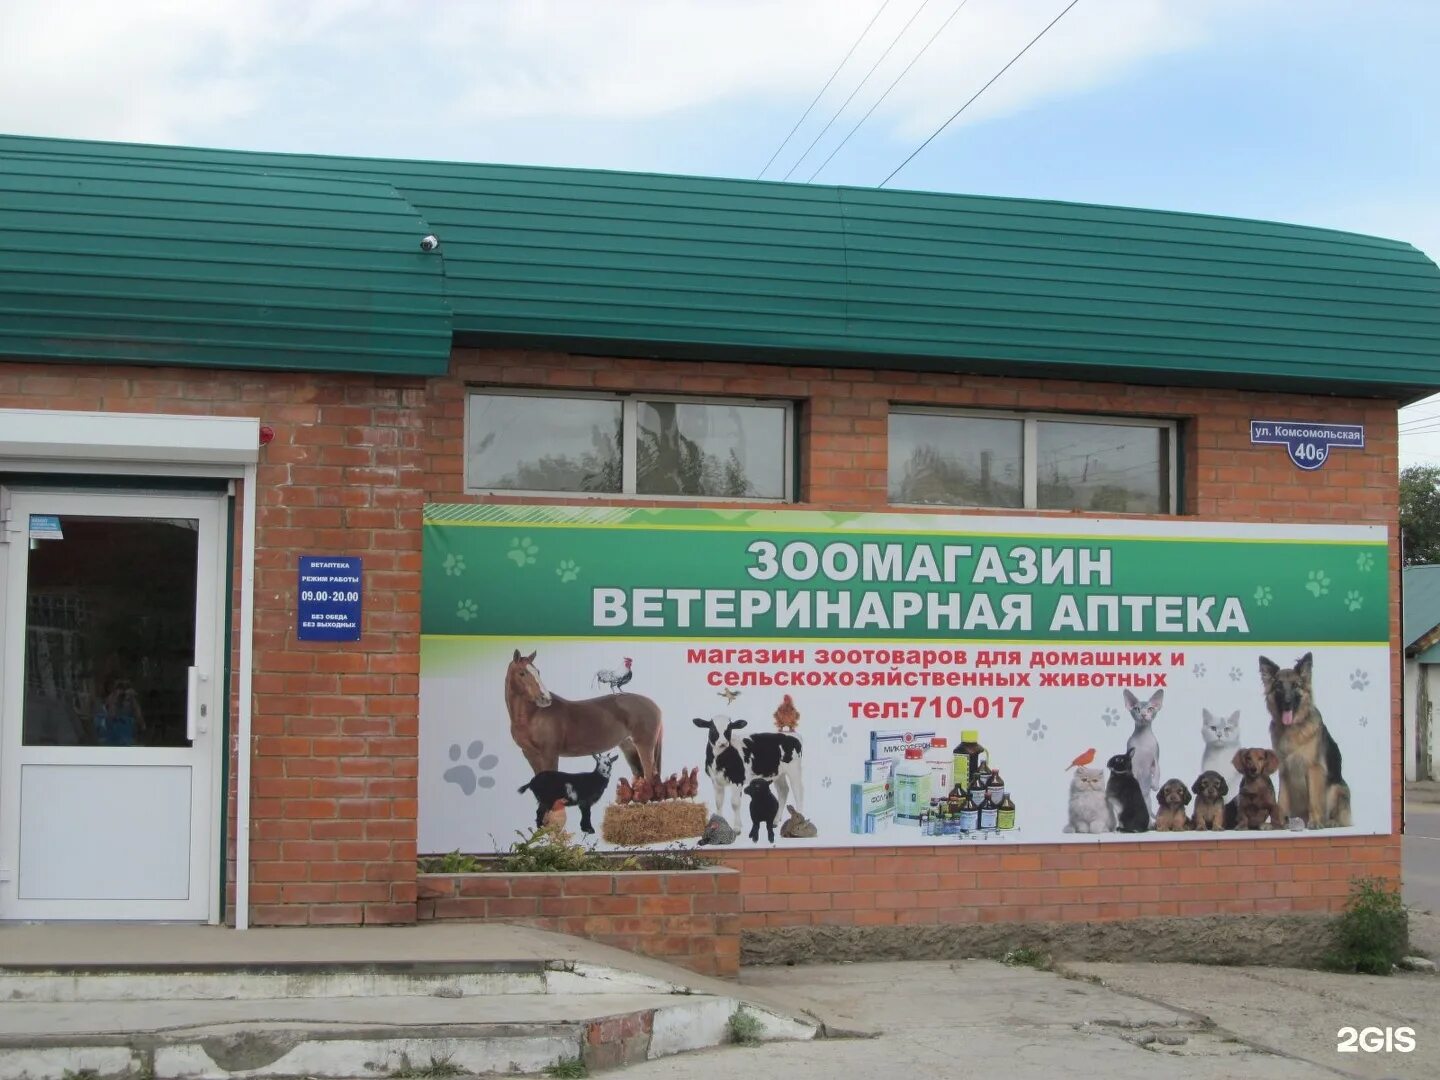 Баннер для ветаптеки. Аптека для животных. Ветеринарный магазин. Ветеринарная аптека для животных. Ветеринарная аптека магазин